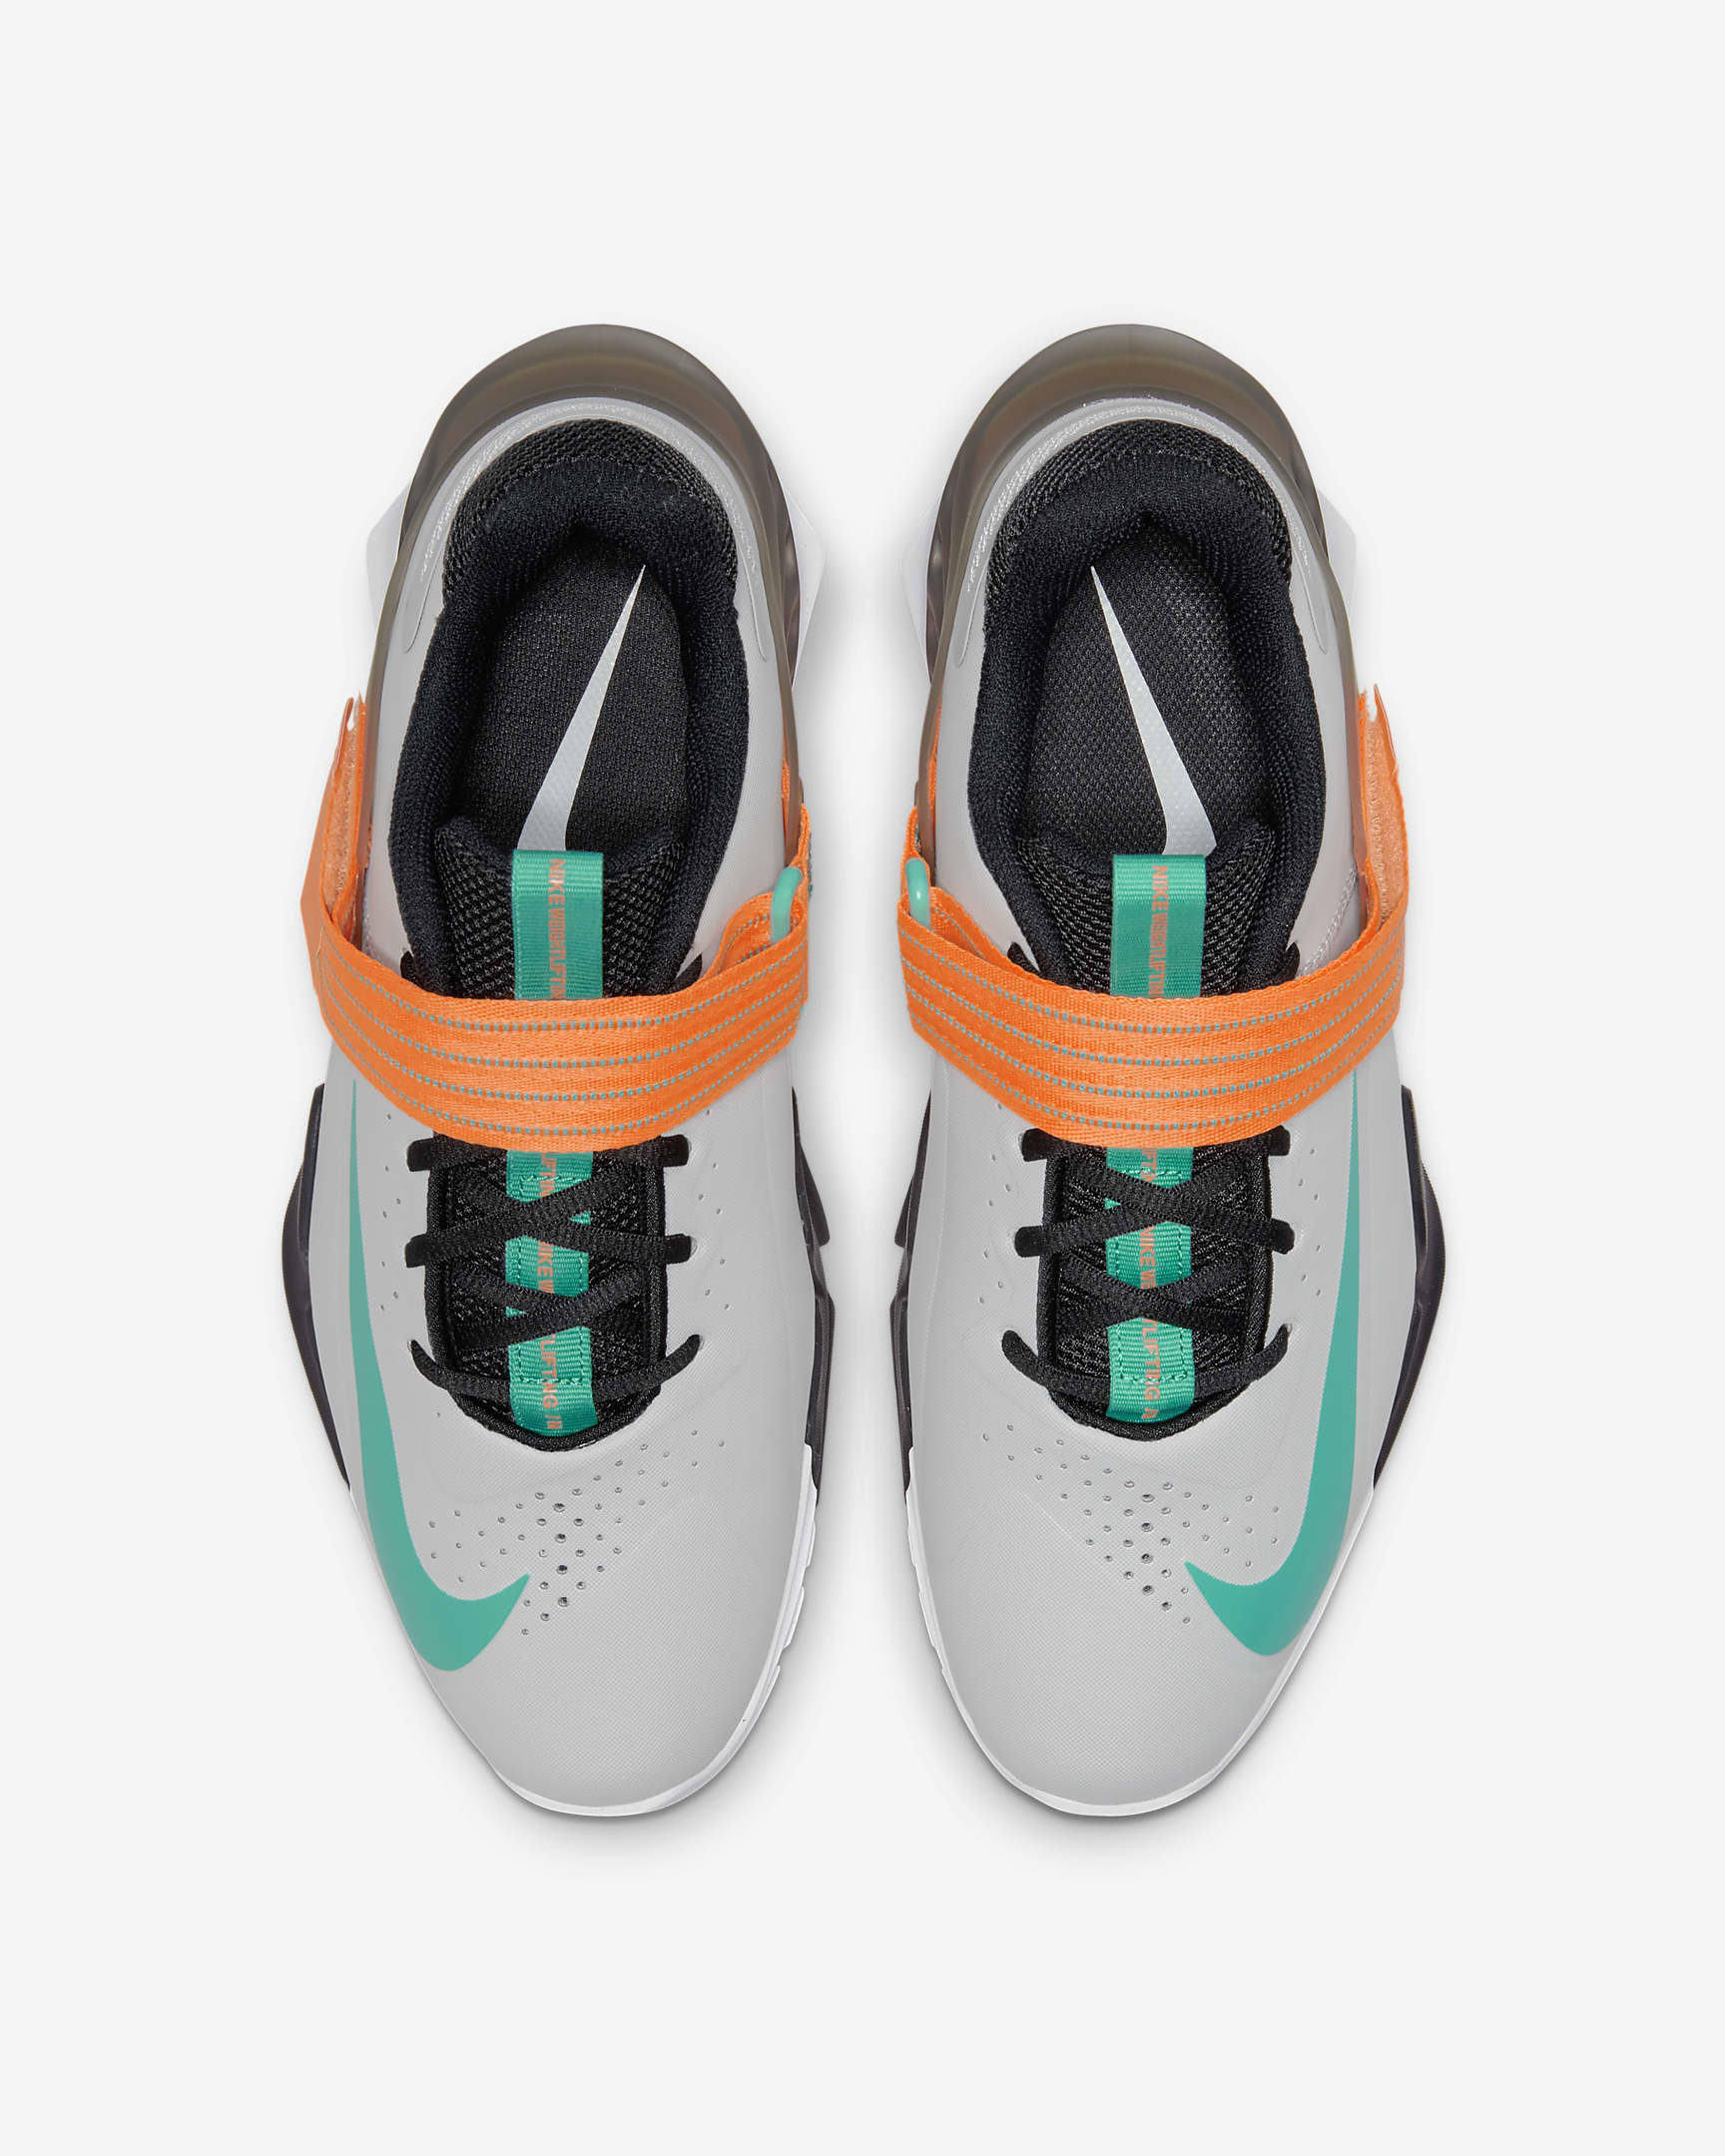 Nike Savaleos Weightlifting Shoes - Grey Fog/Dark Smoke Grey/Total Orange/Clear Emerald